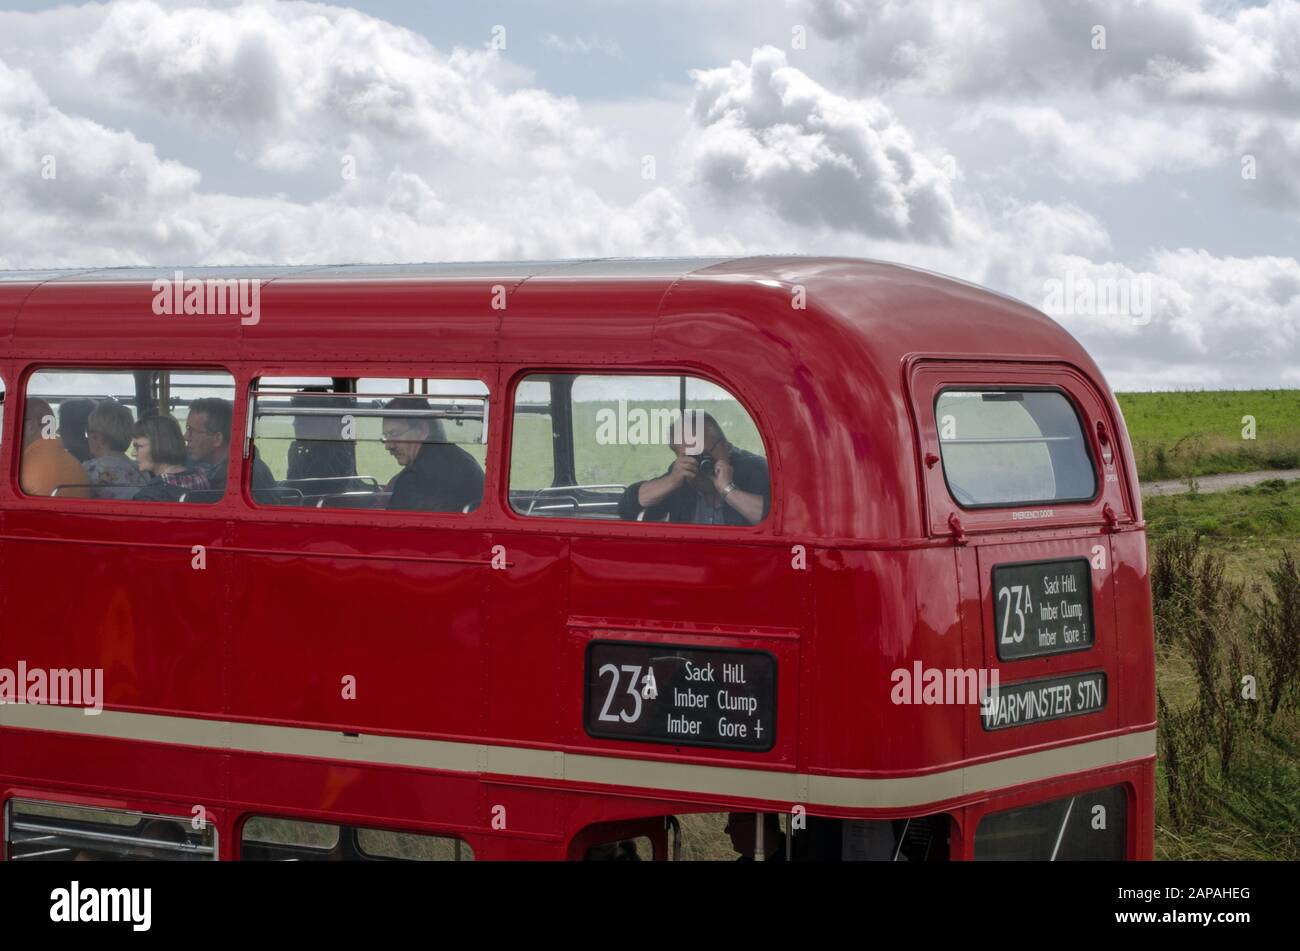 Wiltshire, Royaume-Uni - 17 août 2019: Les touristes sur le pont supérieur d'un bus londonien dans la plaine militaire contrôlée de Salisbury. L'itinéraire du bus ne fonctionne que sur un seul Banque D'Images